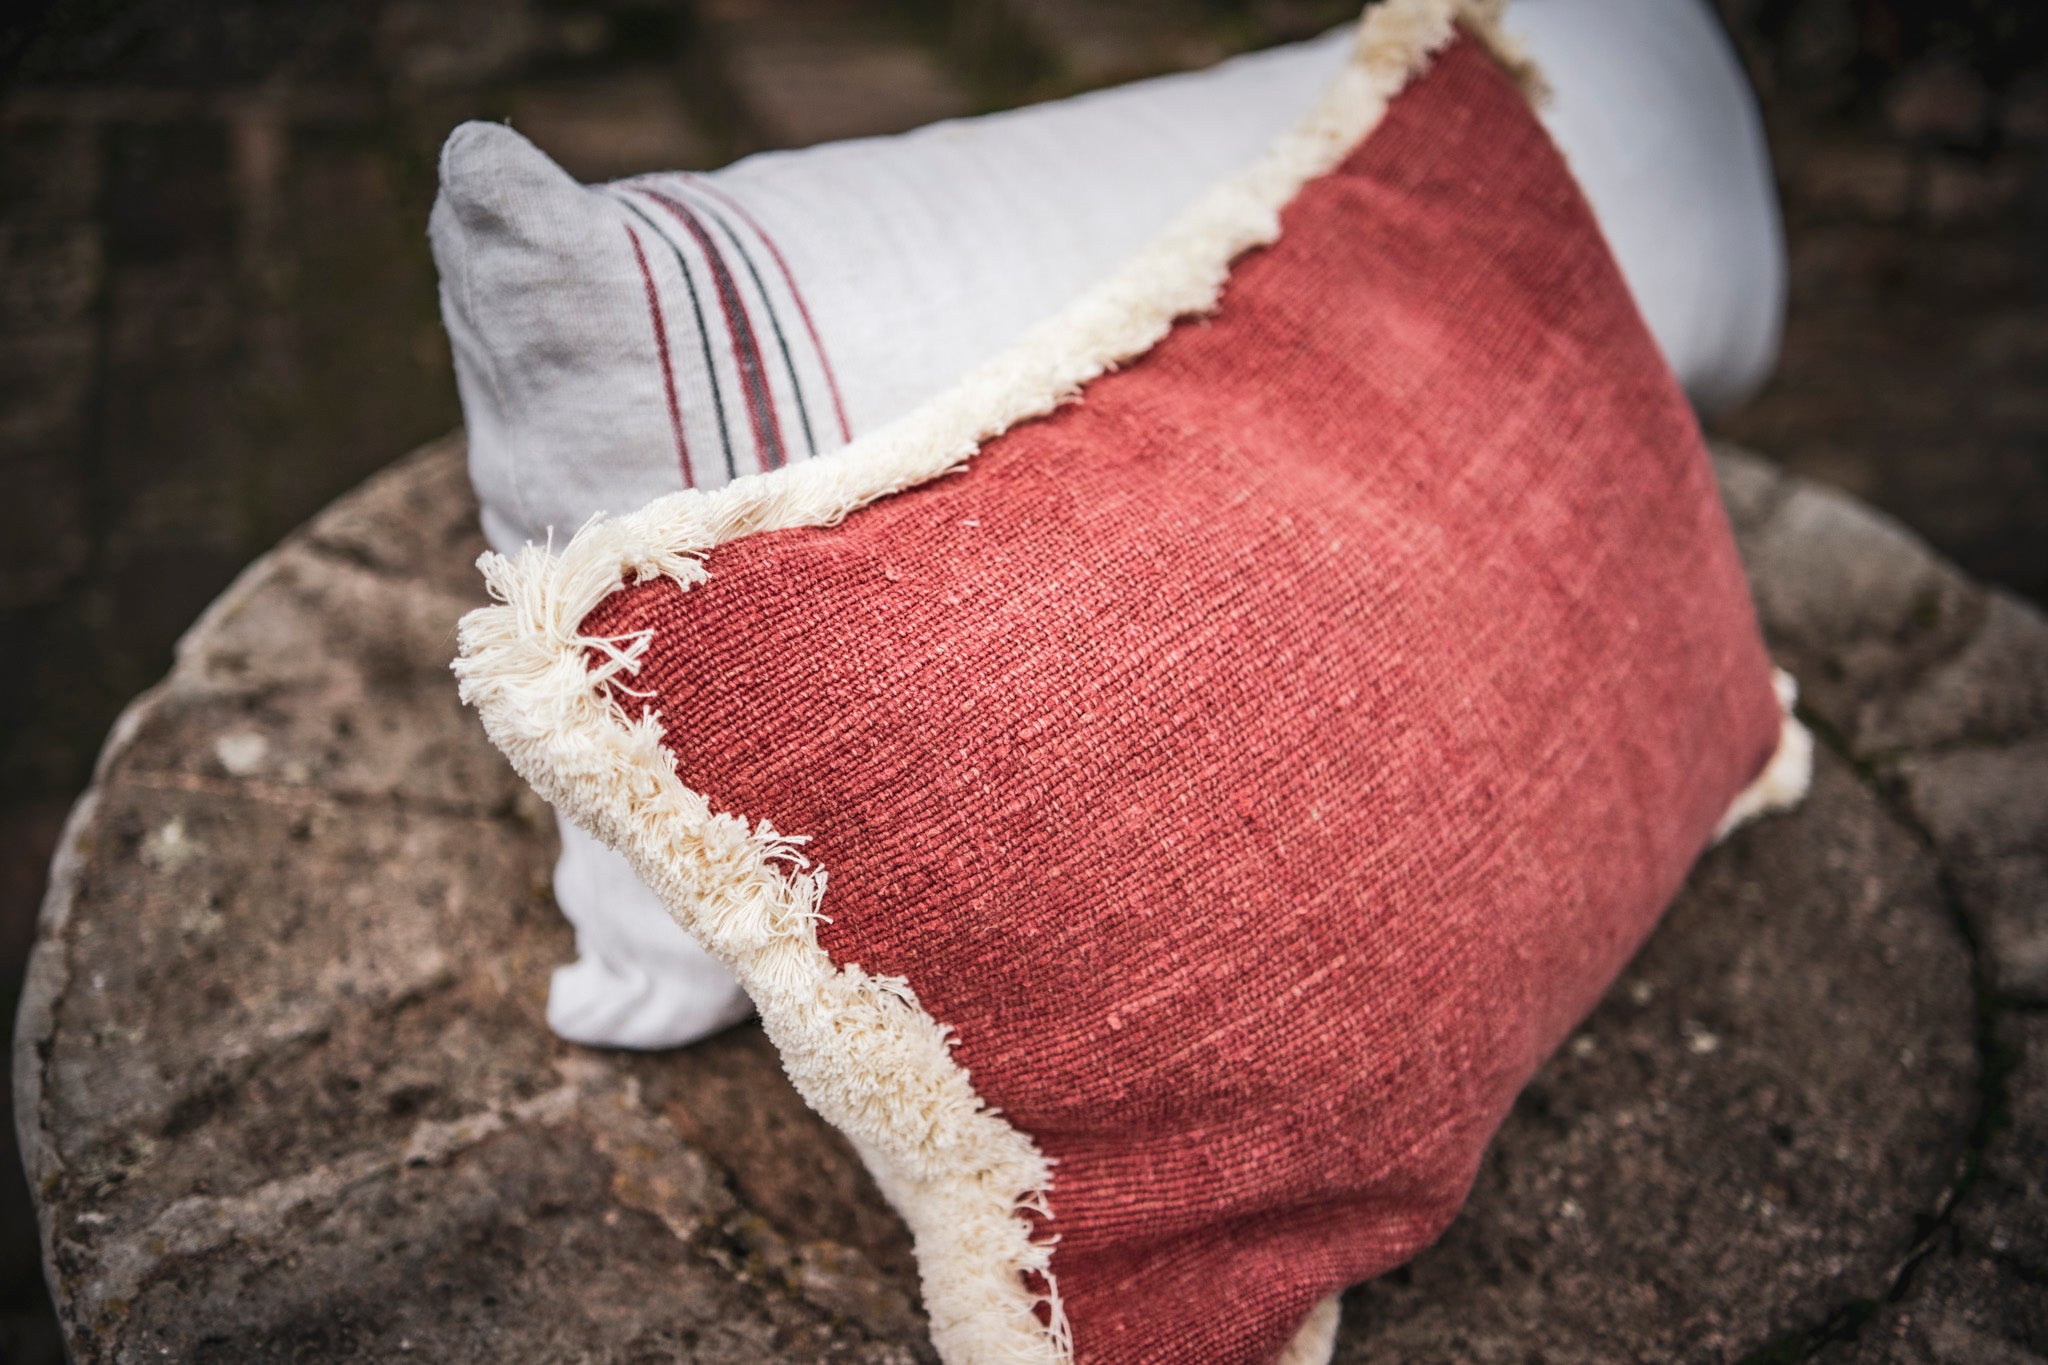 Pillow: Handwoven antique Hungarian hemp - P227